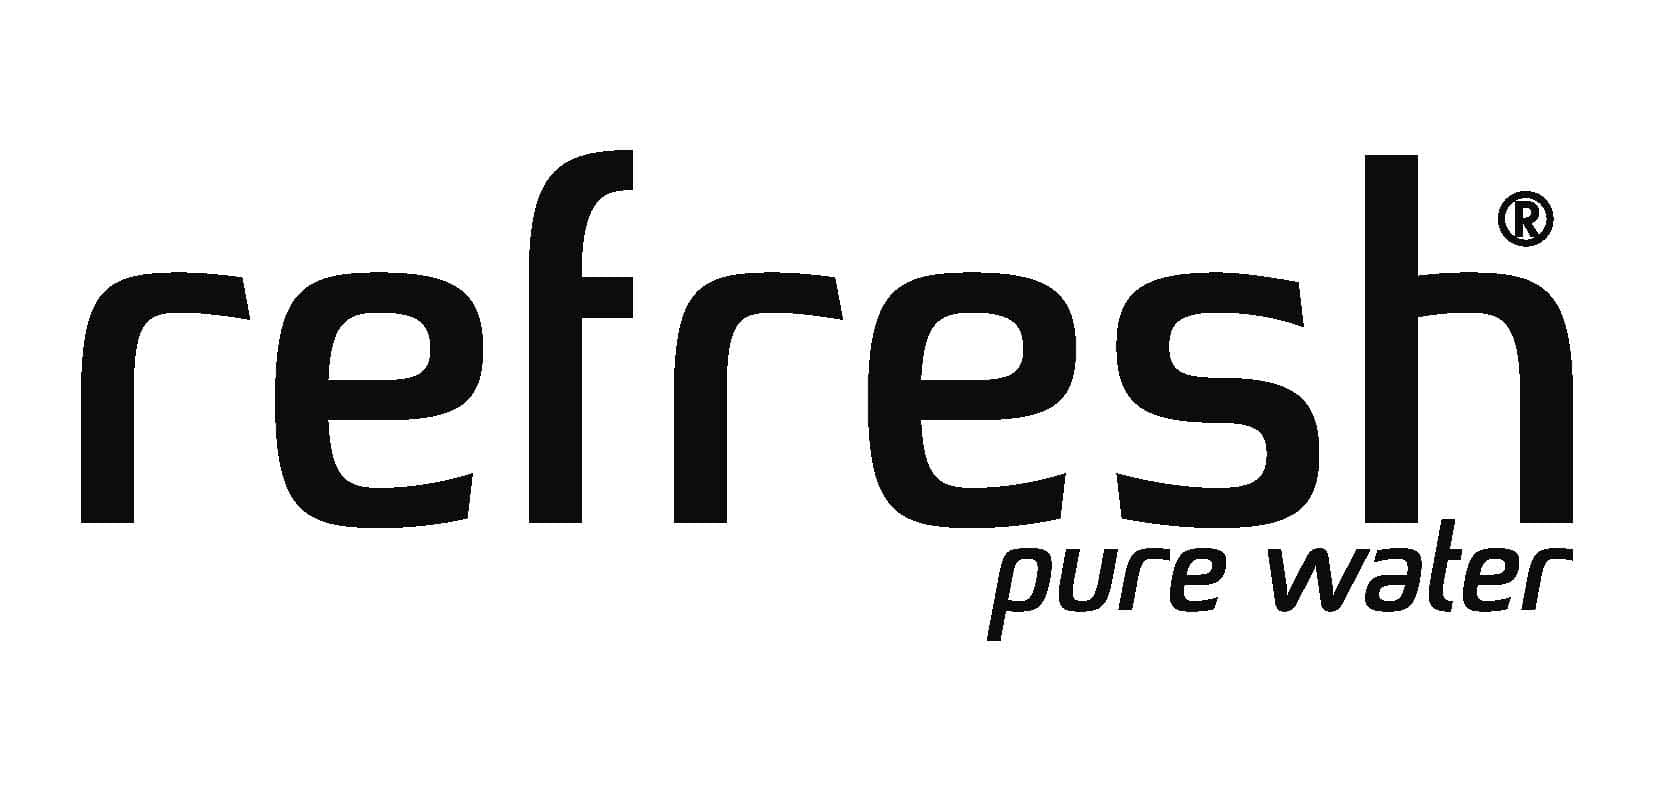 Refresh logo